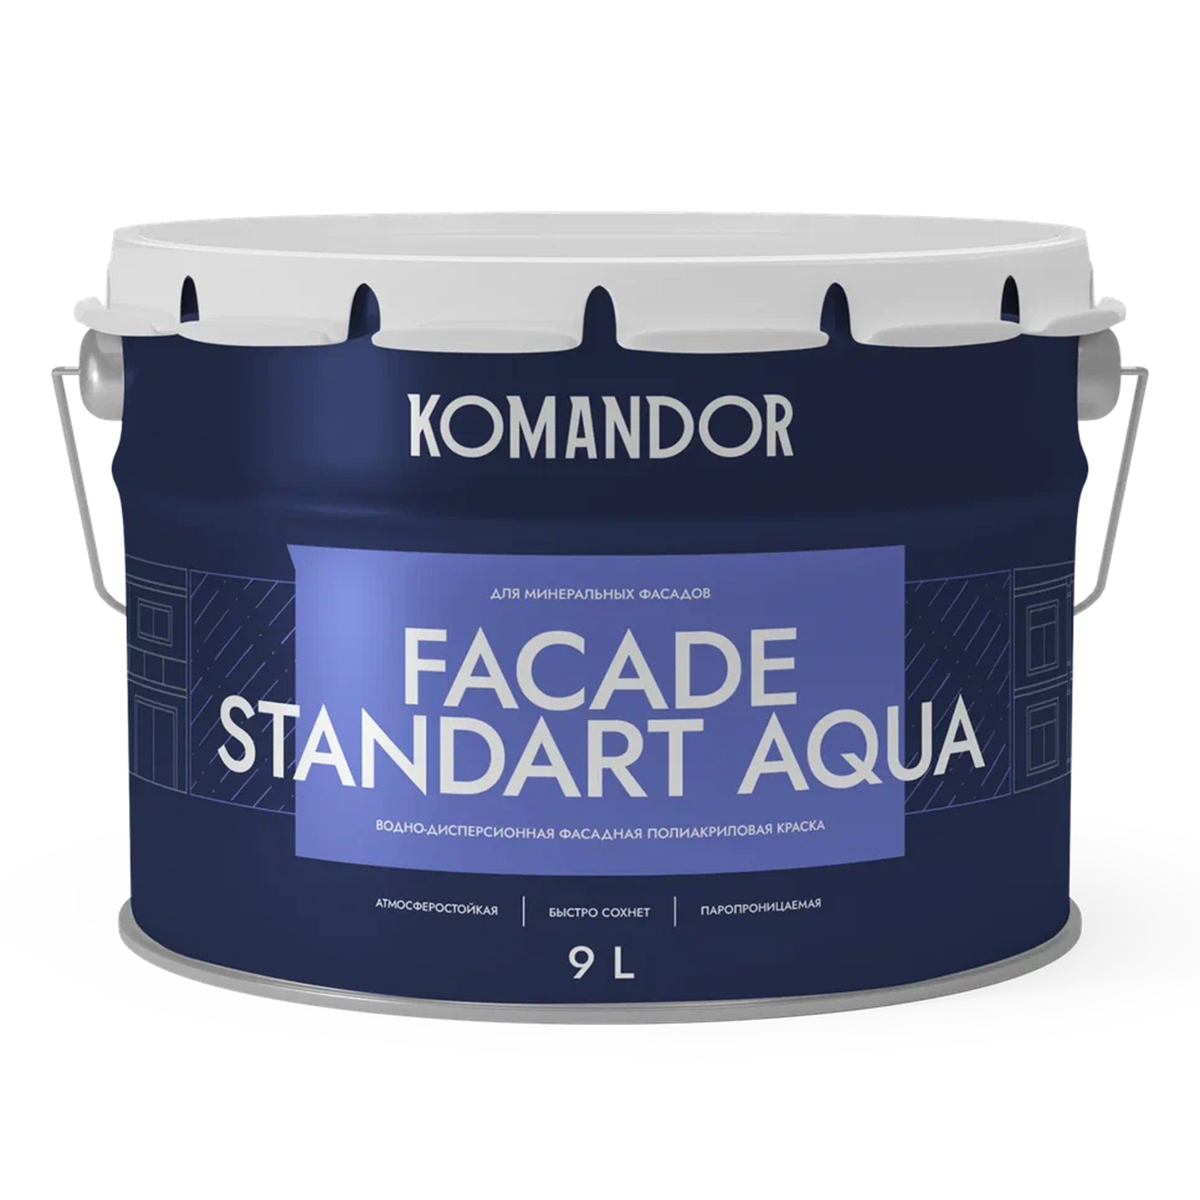 Краска фасадная Komandor Facade Standart Aqua, глубокоматовая, база А, белая, 9 л краска в э фасадная symphony aqua lap 9л